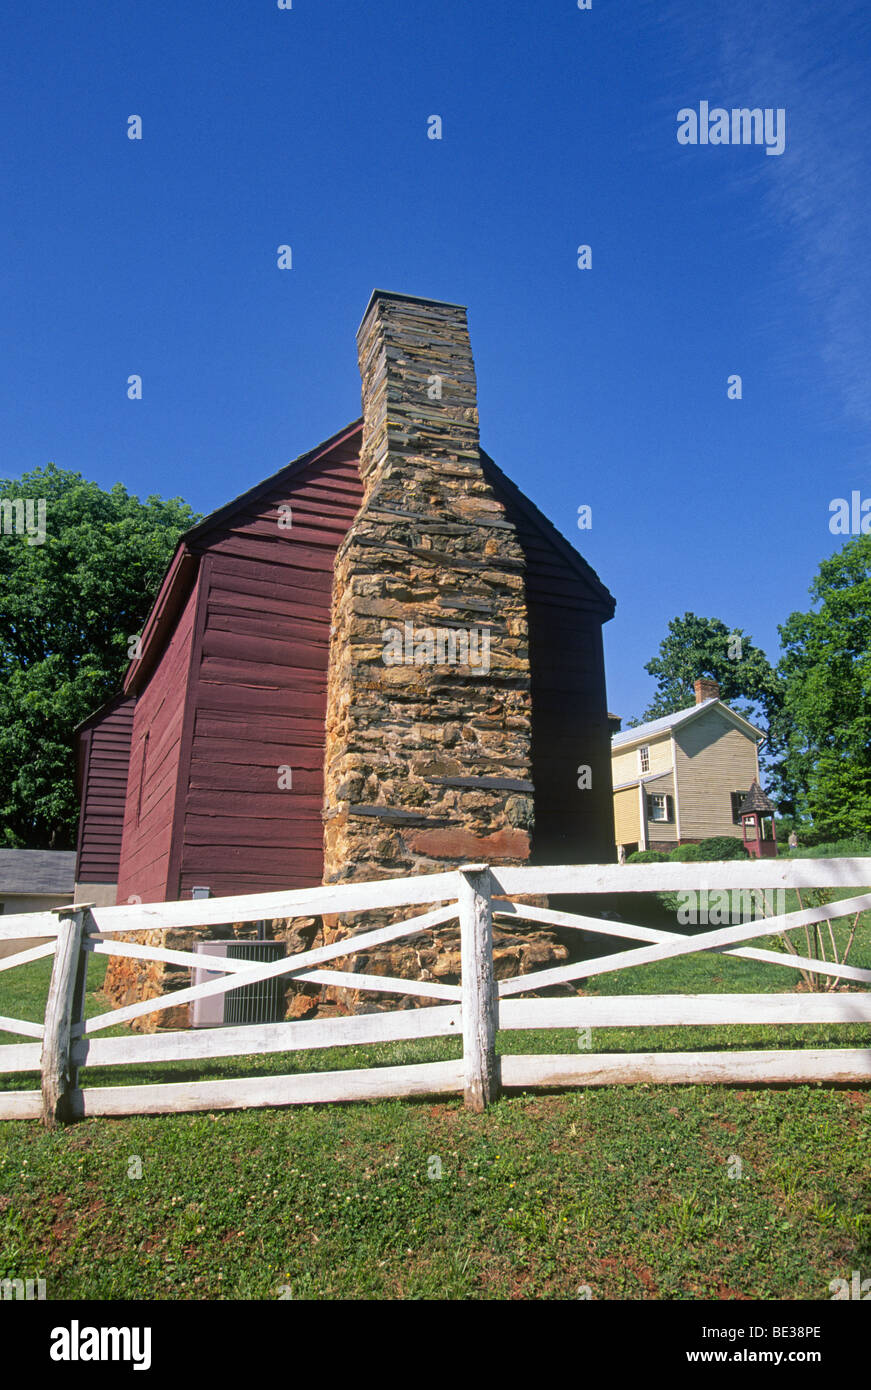 Ash Lawn-Highland, la maison et la ferme du président américain James Monroe, près de Charlottesville, Virginia Banque D'Images